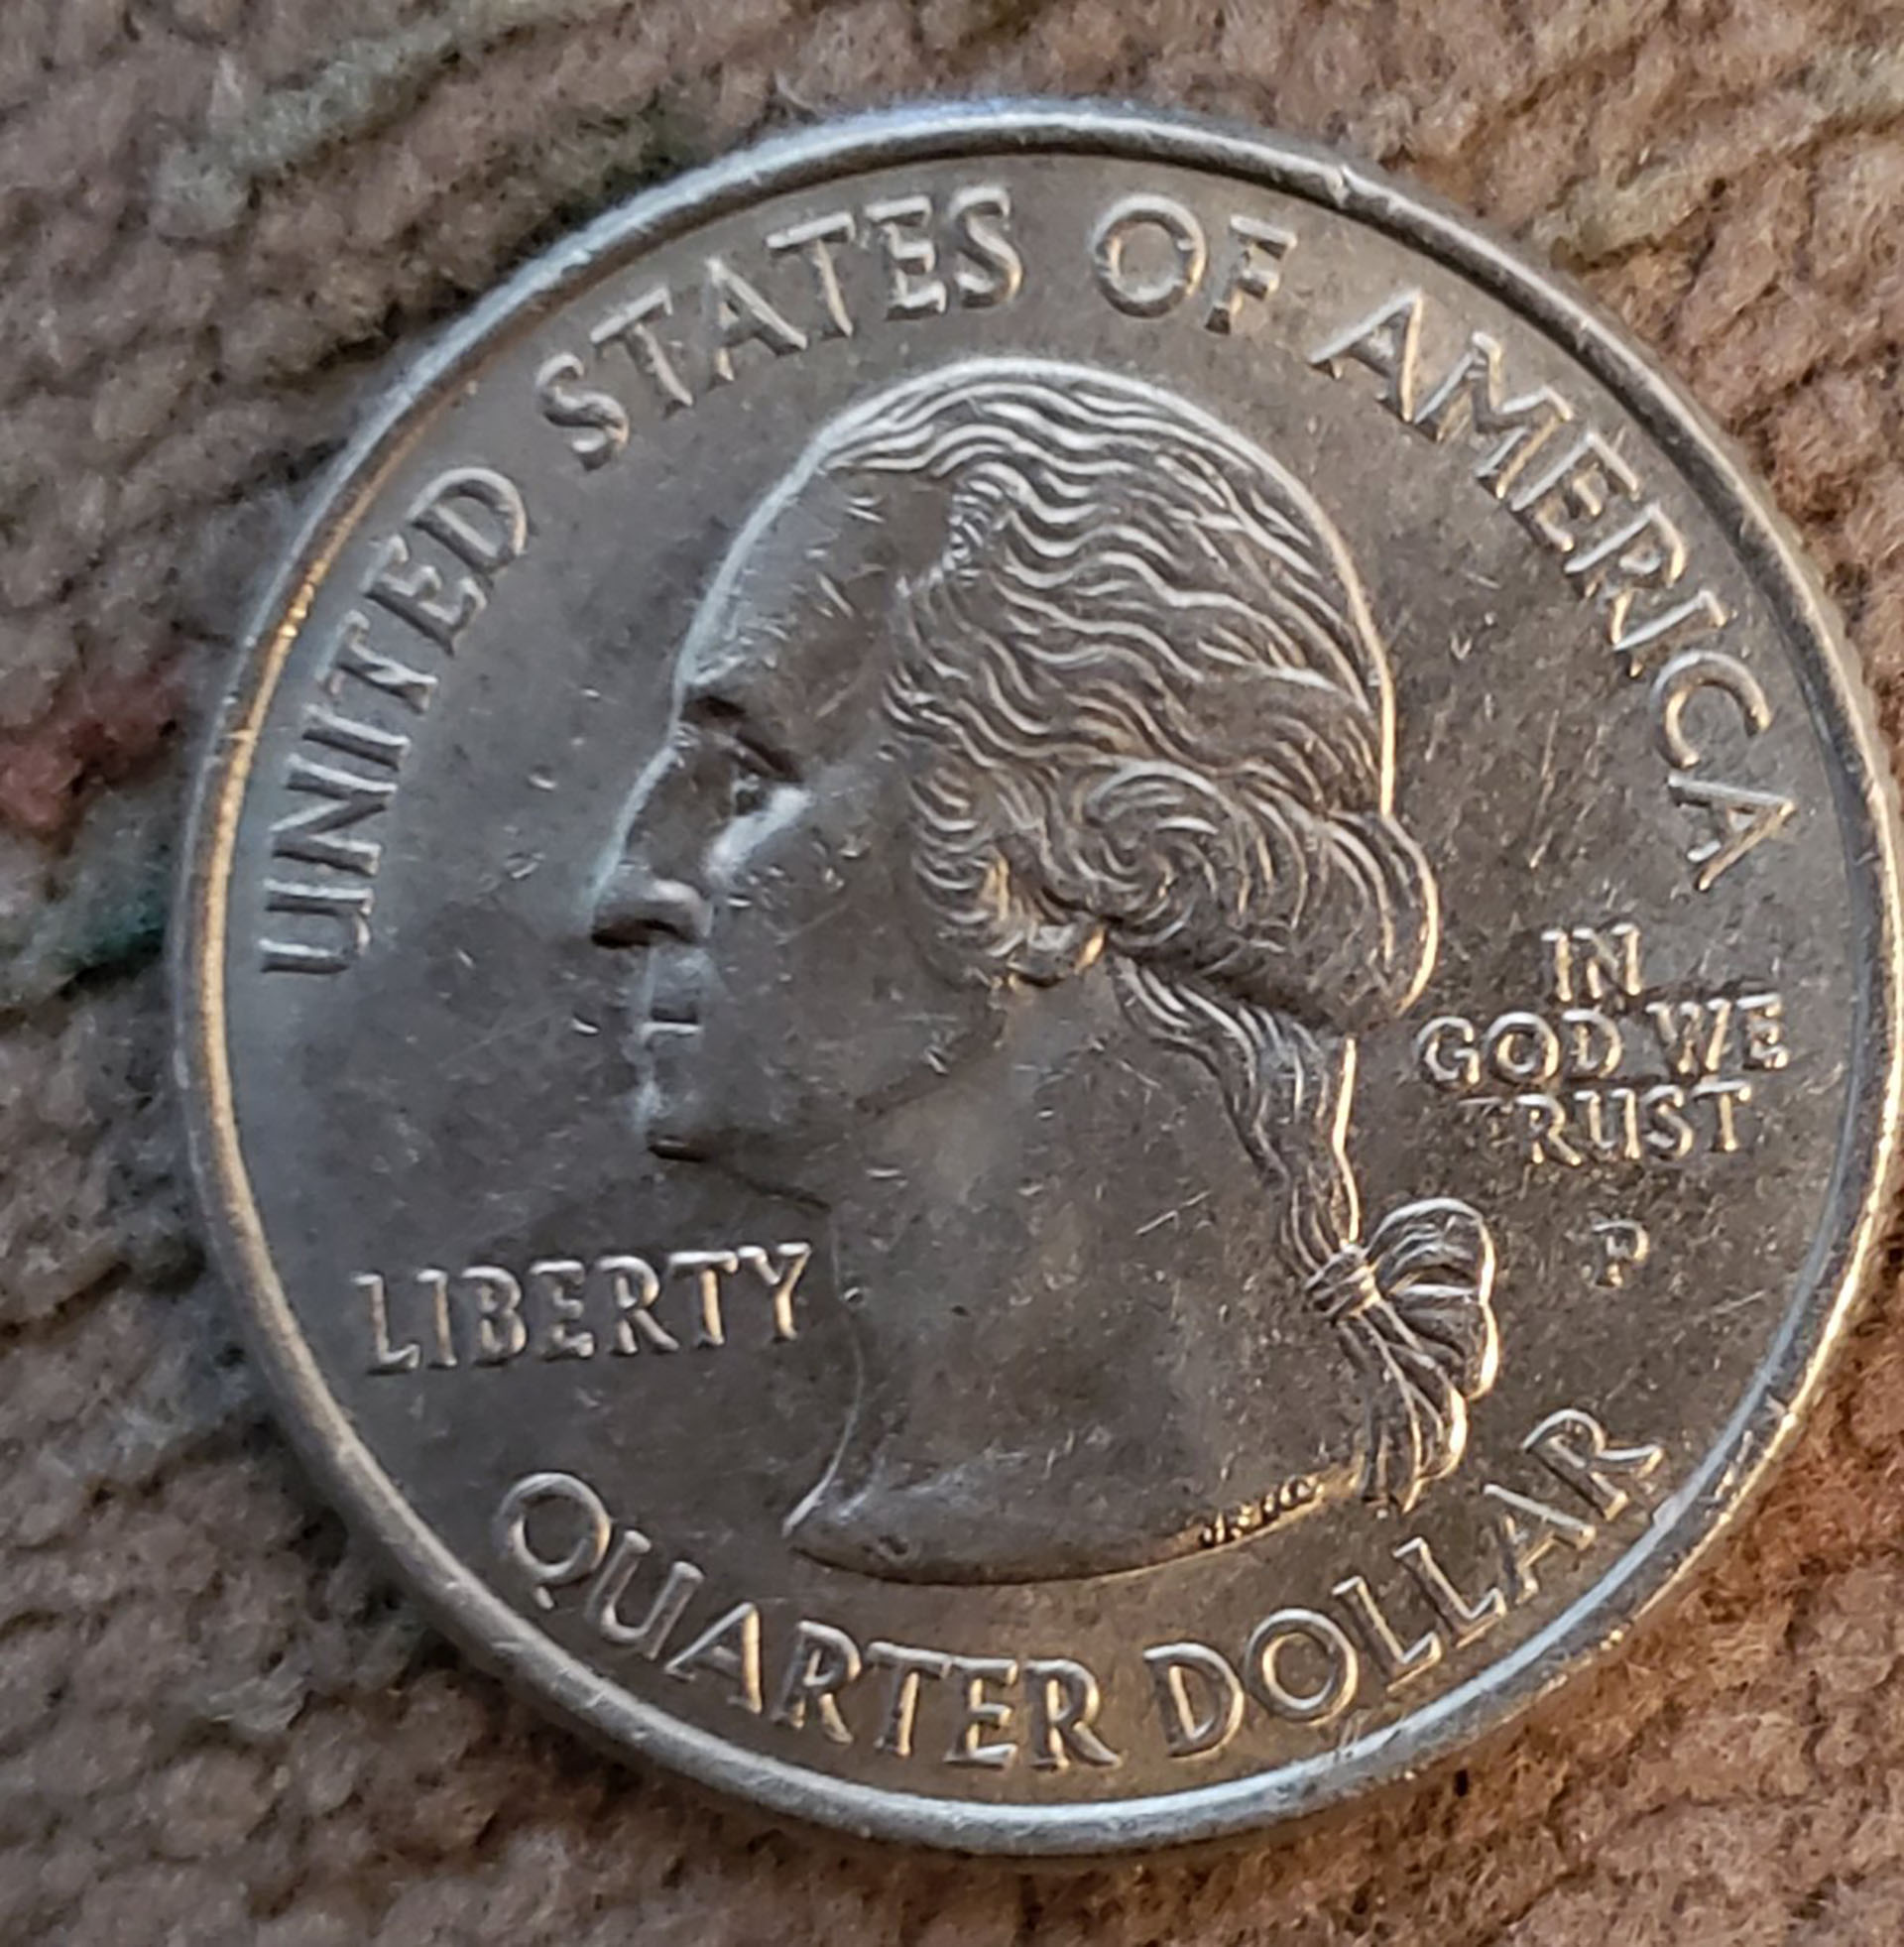 Uno de los ejemplares de monedas con la leyenda "In God we Rust". Fuente: coincommunity.com